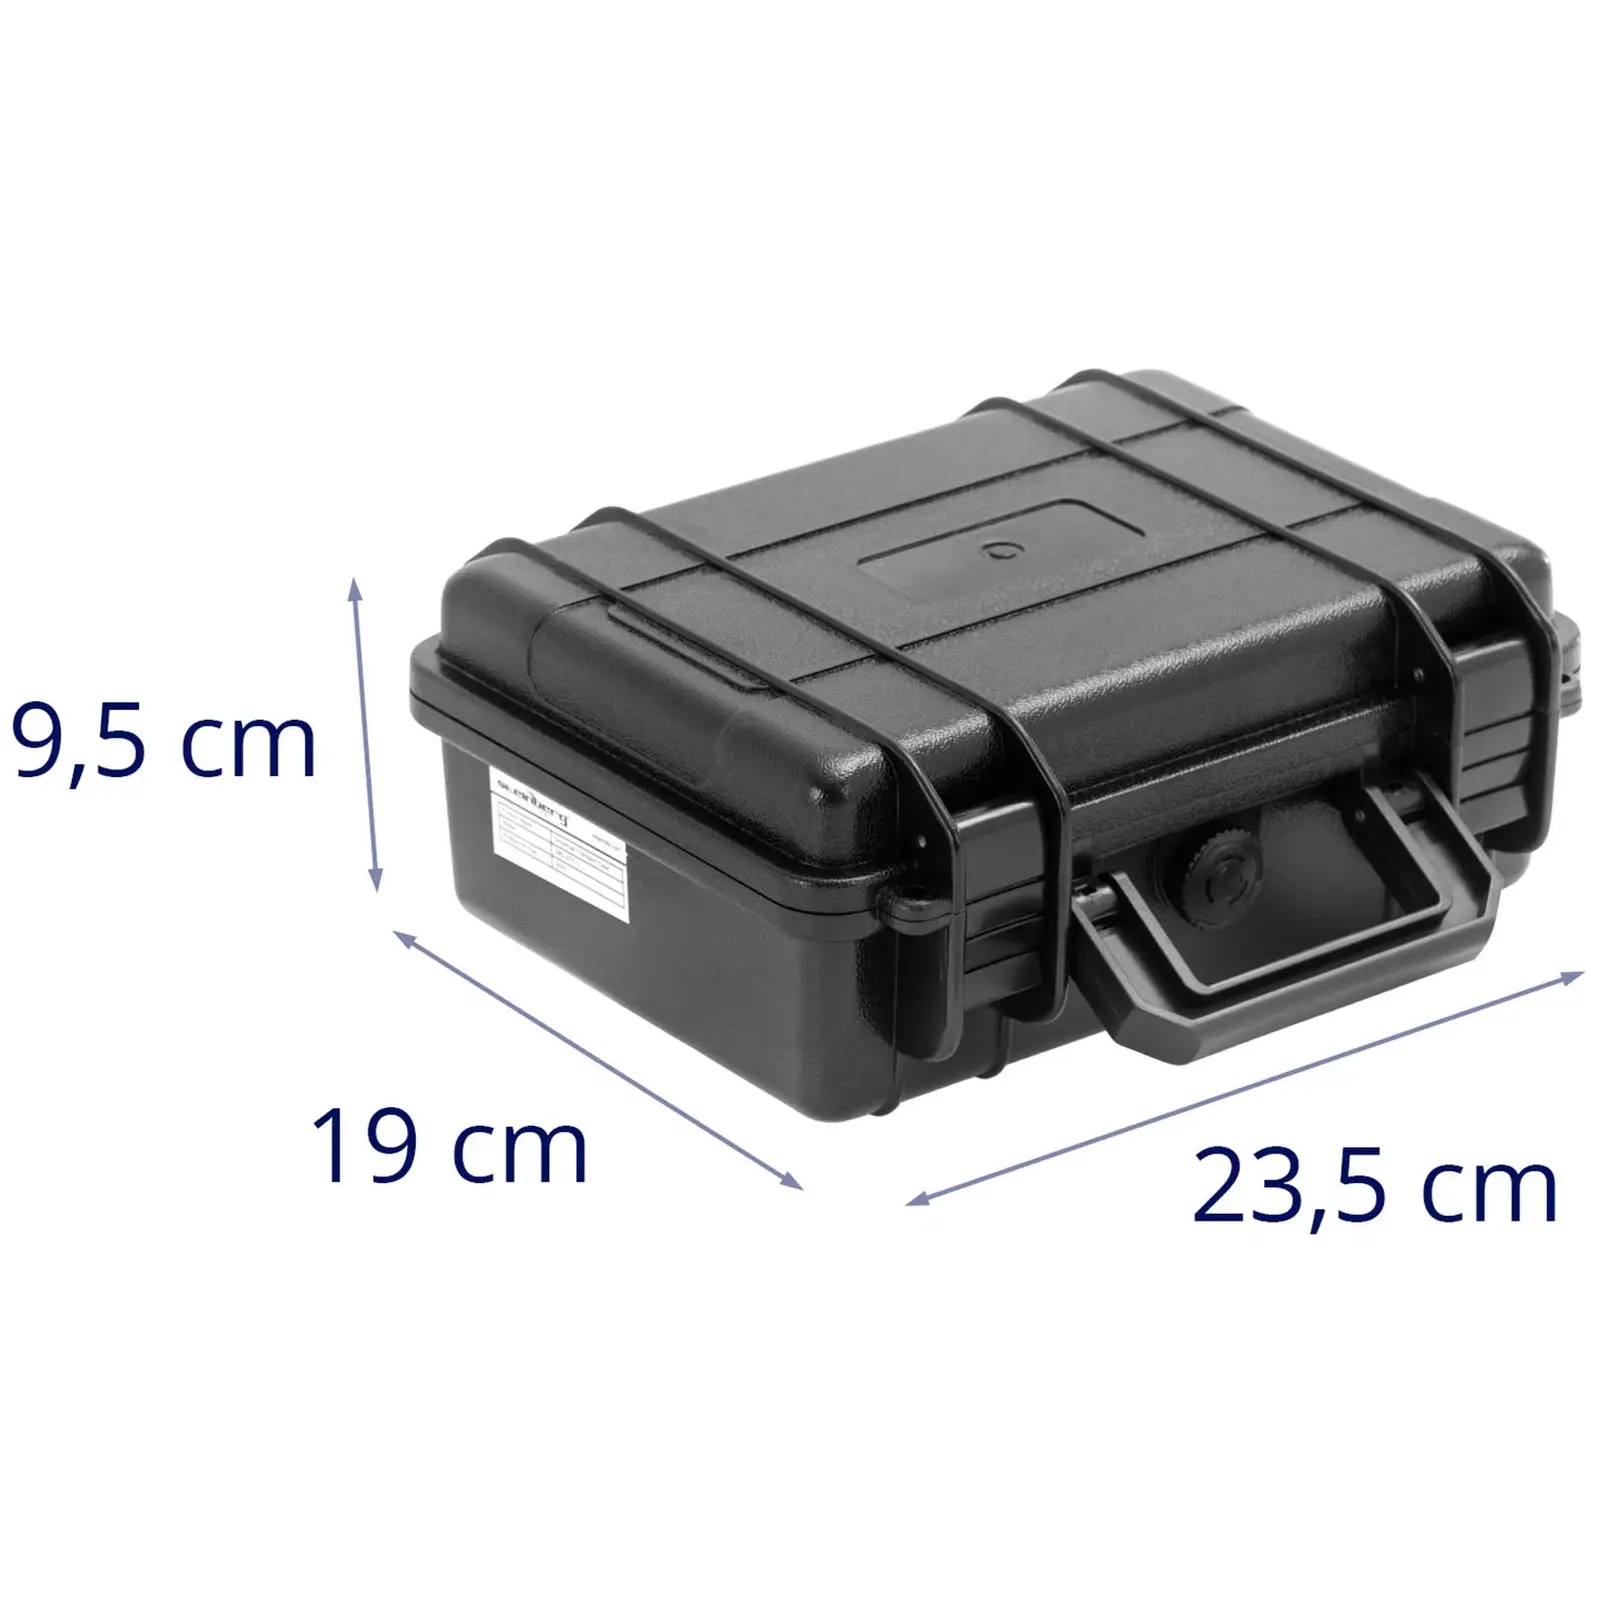 Valigetta per macchina fotografica - Utilizzo universale - Impermeabile - 2 L - Nera - 23,5 x 18,8 x 9,6 cm